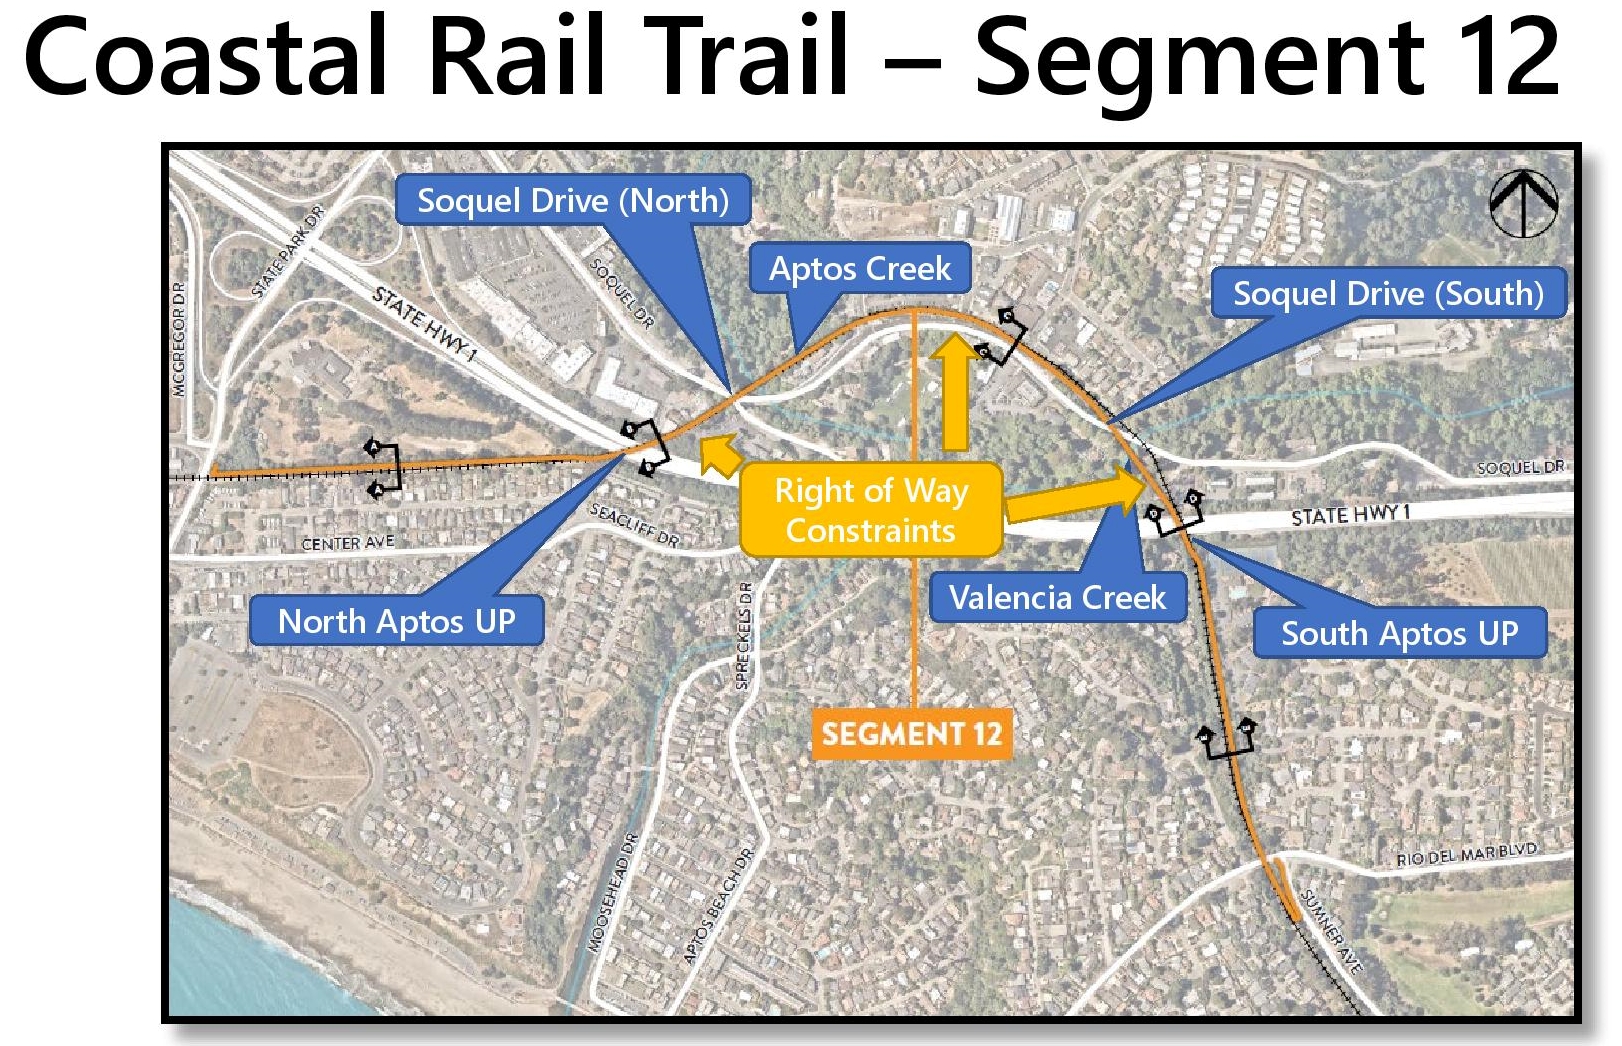 A map shows segment 12 of the Coastal Rail Trail